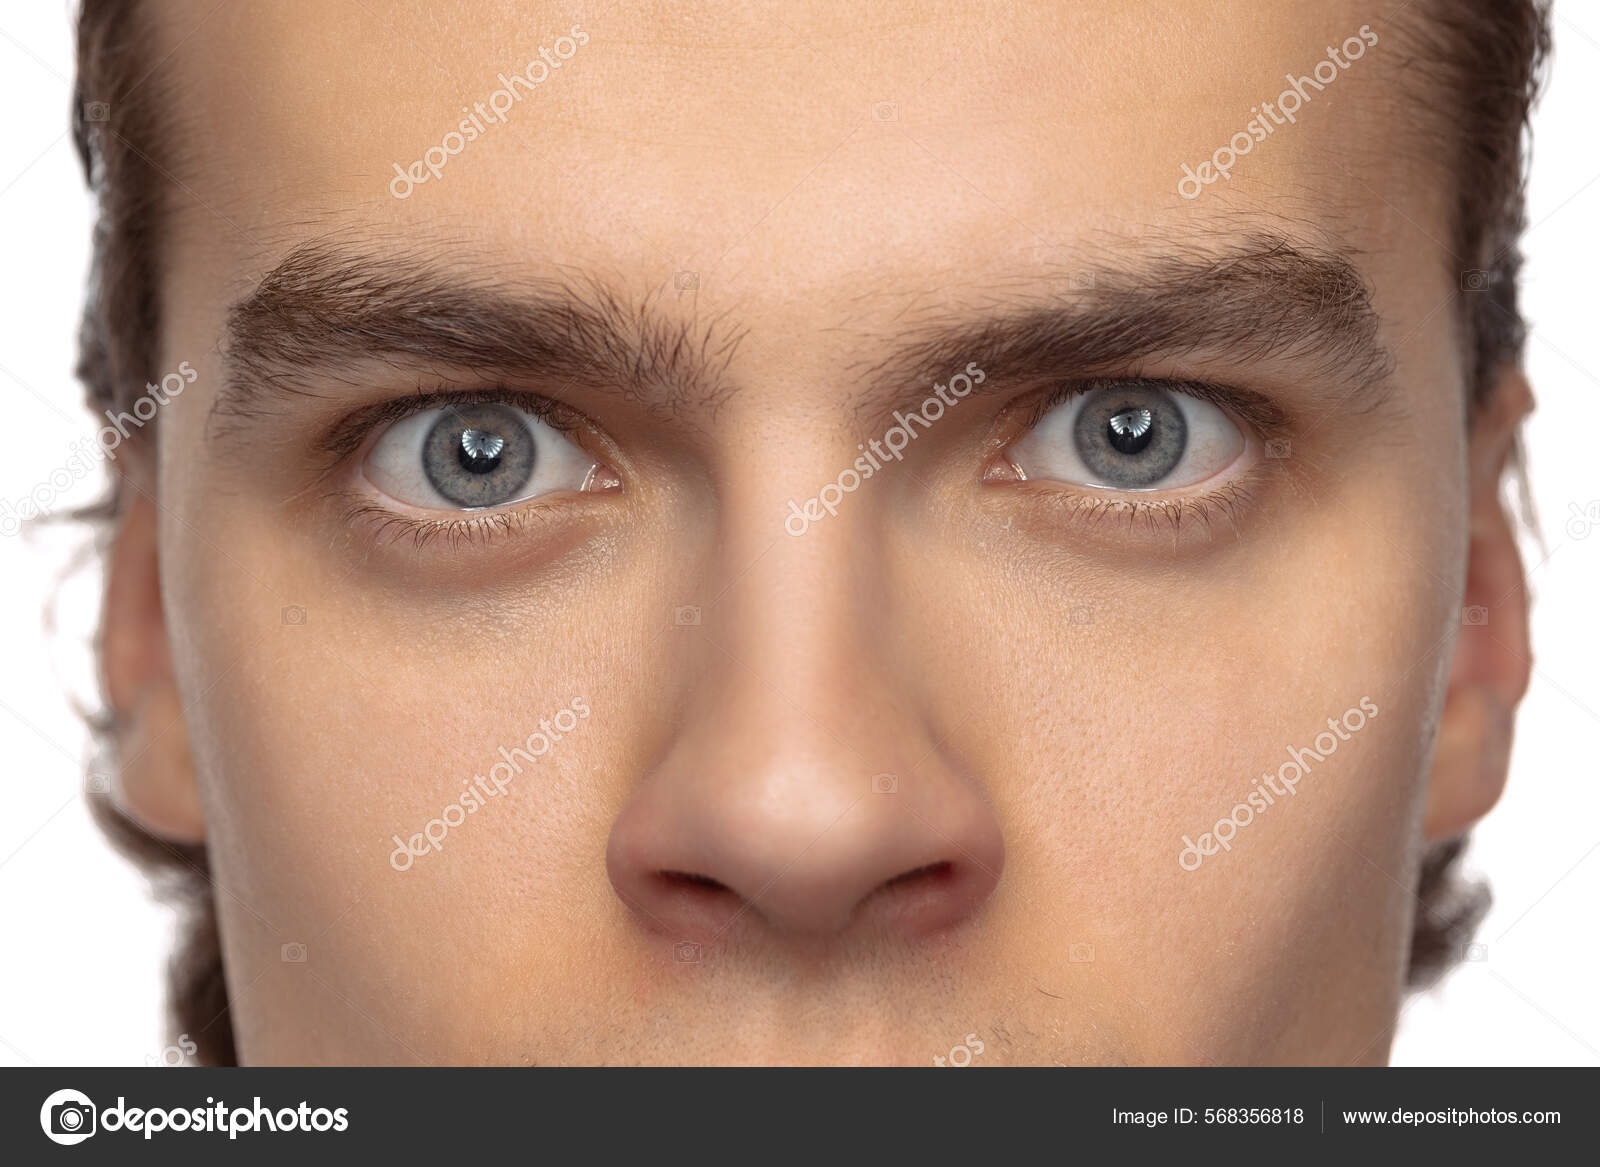 Olhos masculinos